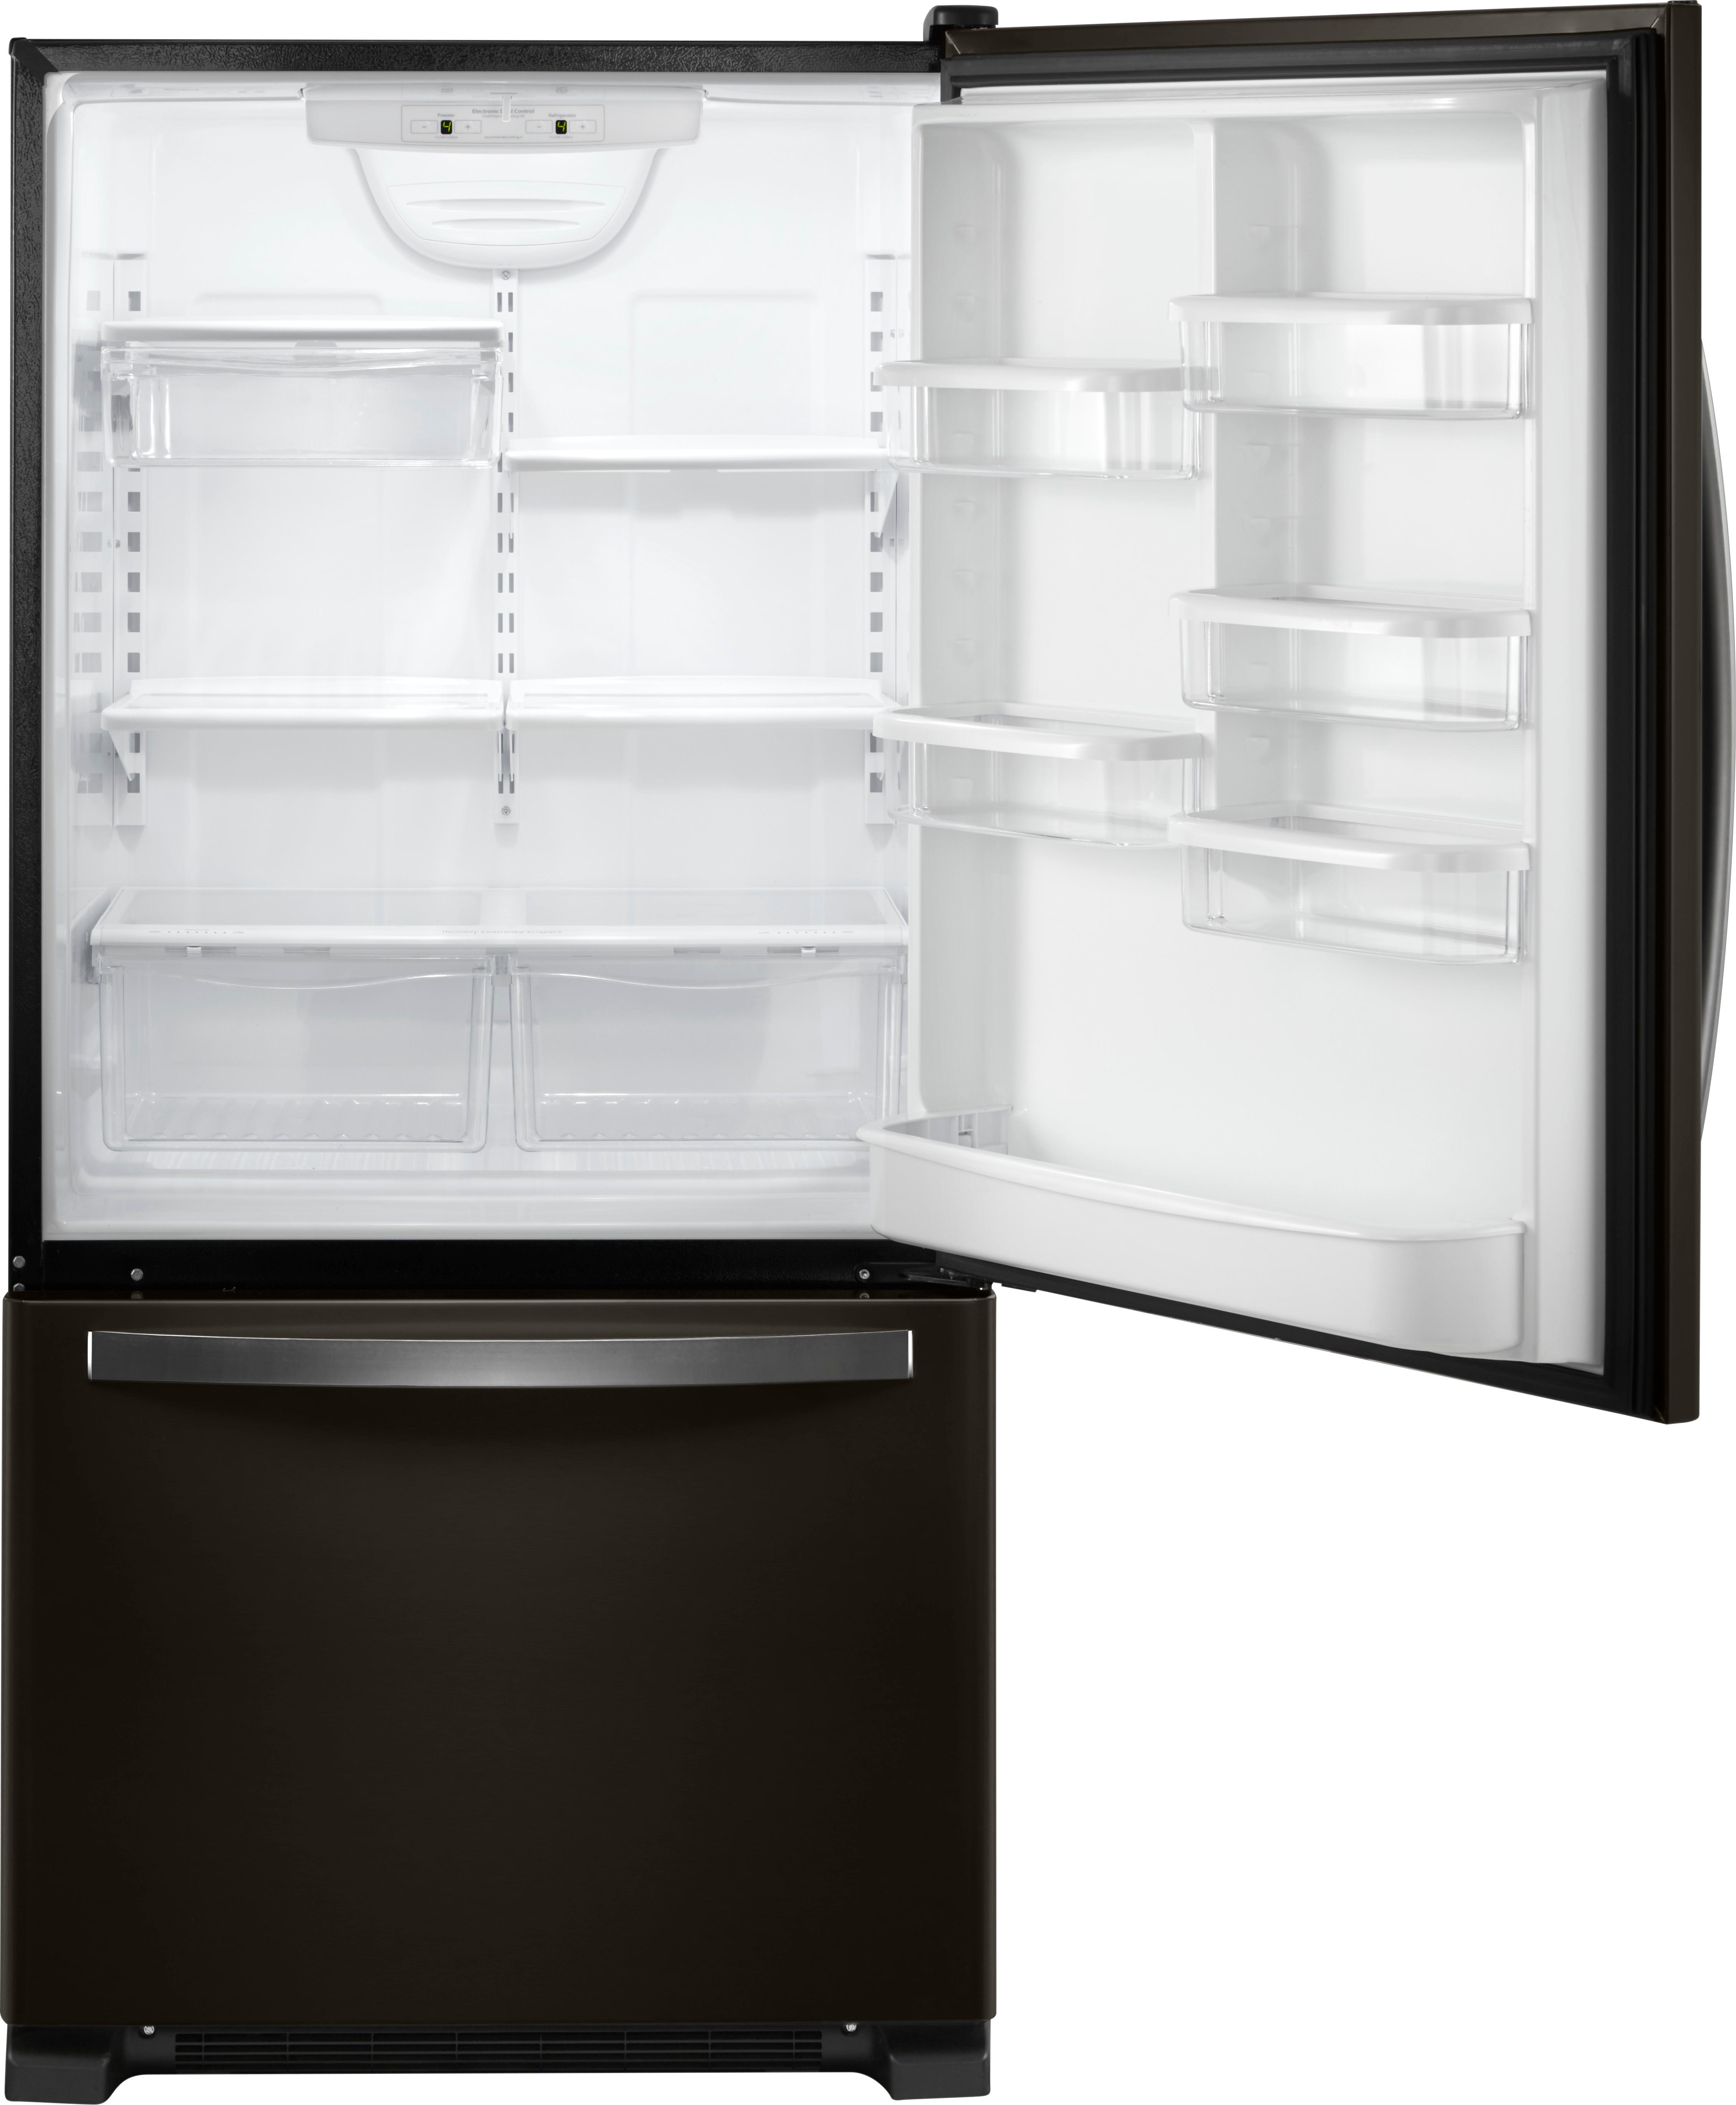 Whirlpool 22 Cu. Ft. Bottom-Freezer Refrigerator with Freezer